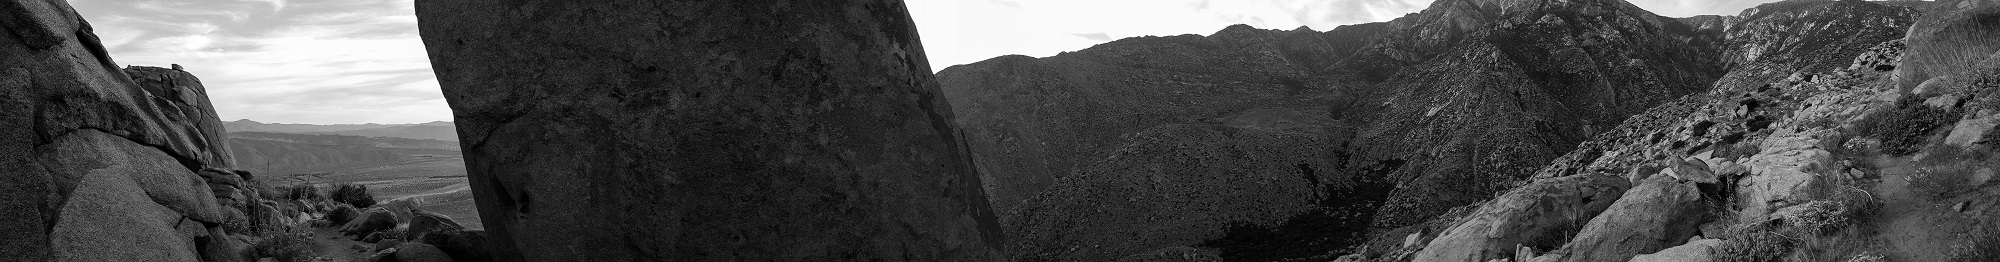 Panorama descent San Jacinto